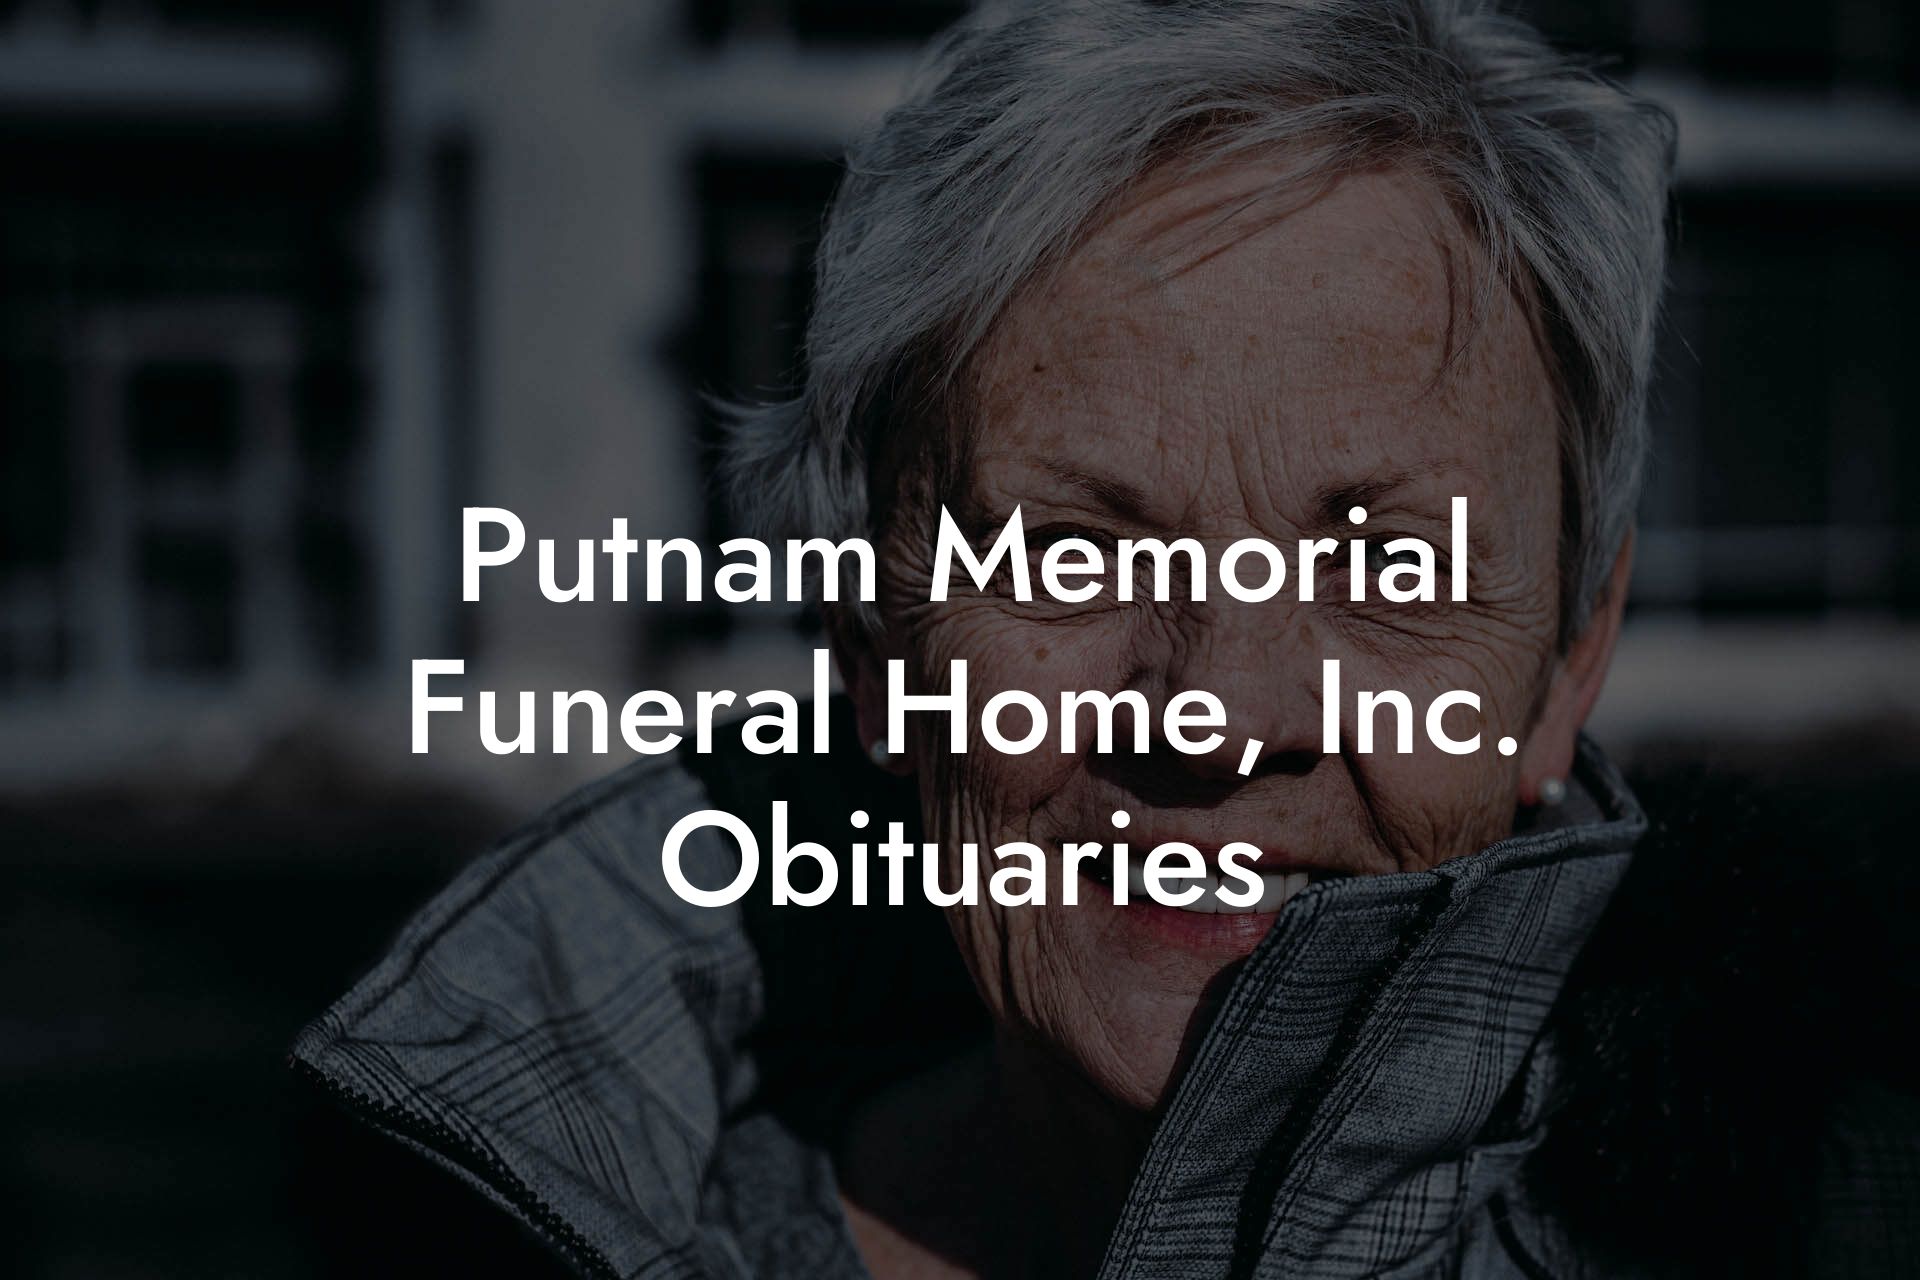 Putnam Memorial Funeral Home, Inc. Obituaries